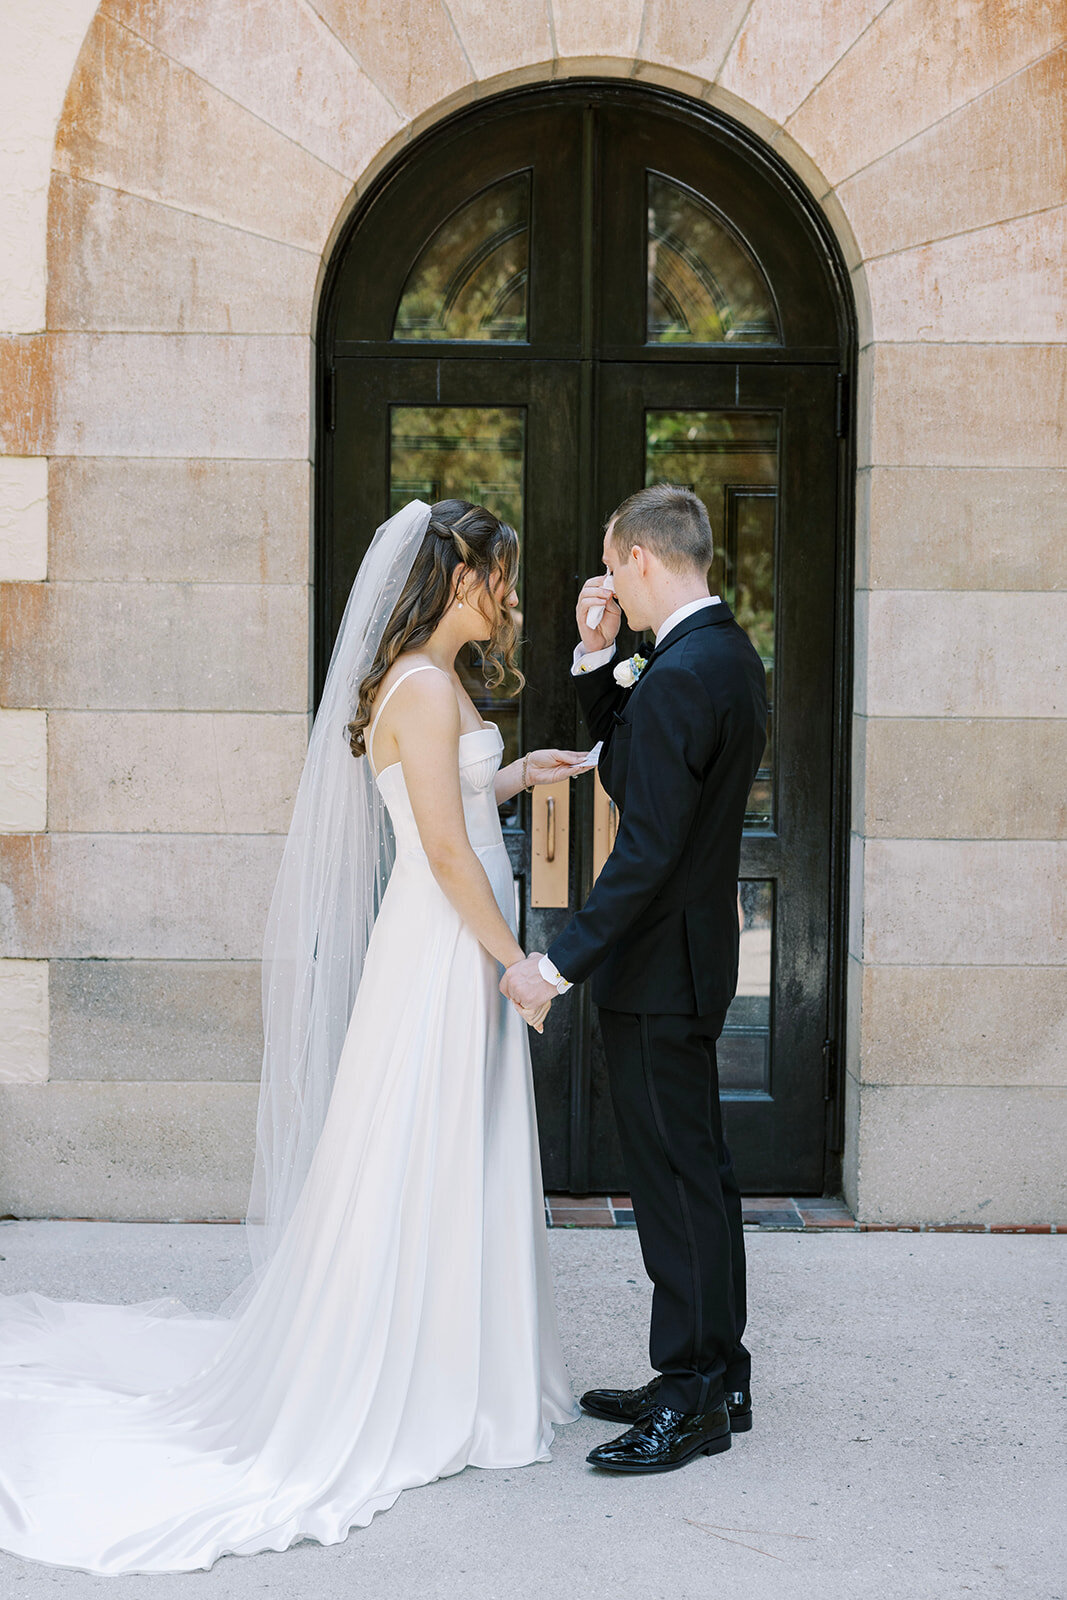 CORNELIA ZAISS PHOTOGRAPHY COURTNEY + ANDREW WEDDING 0352_websize